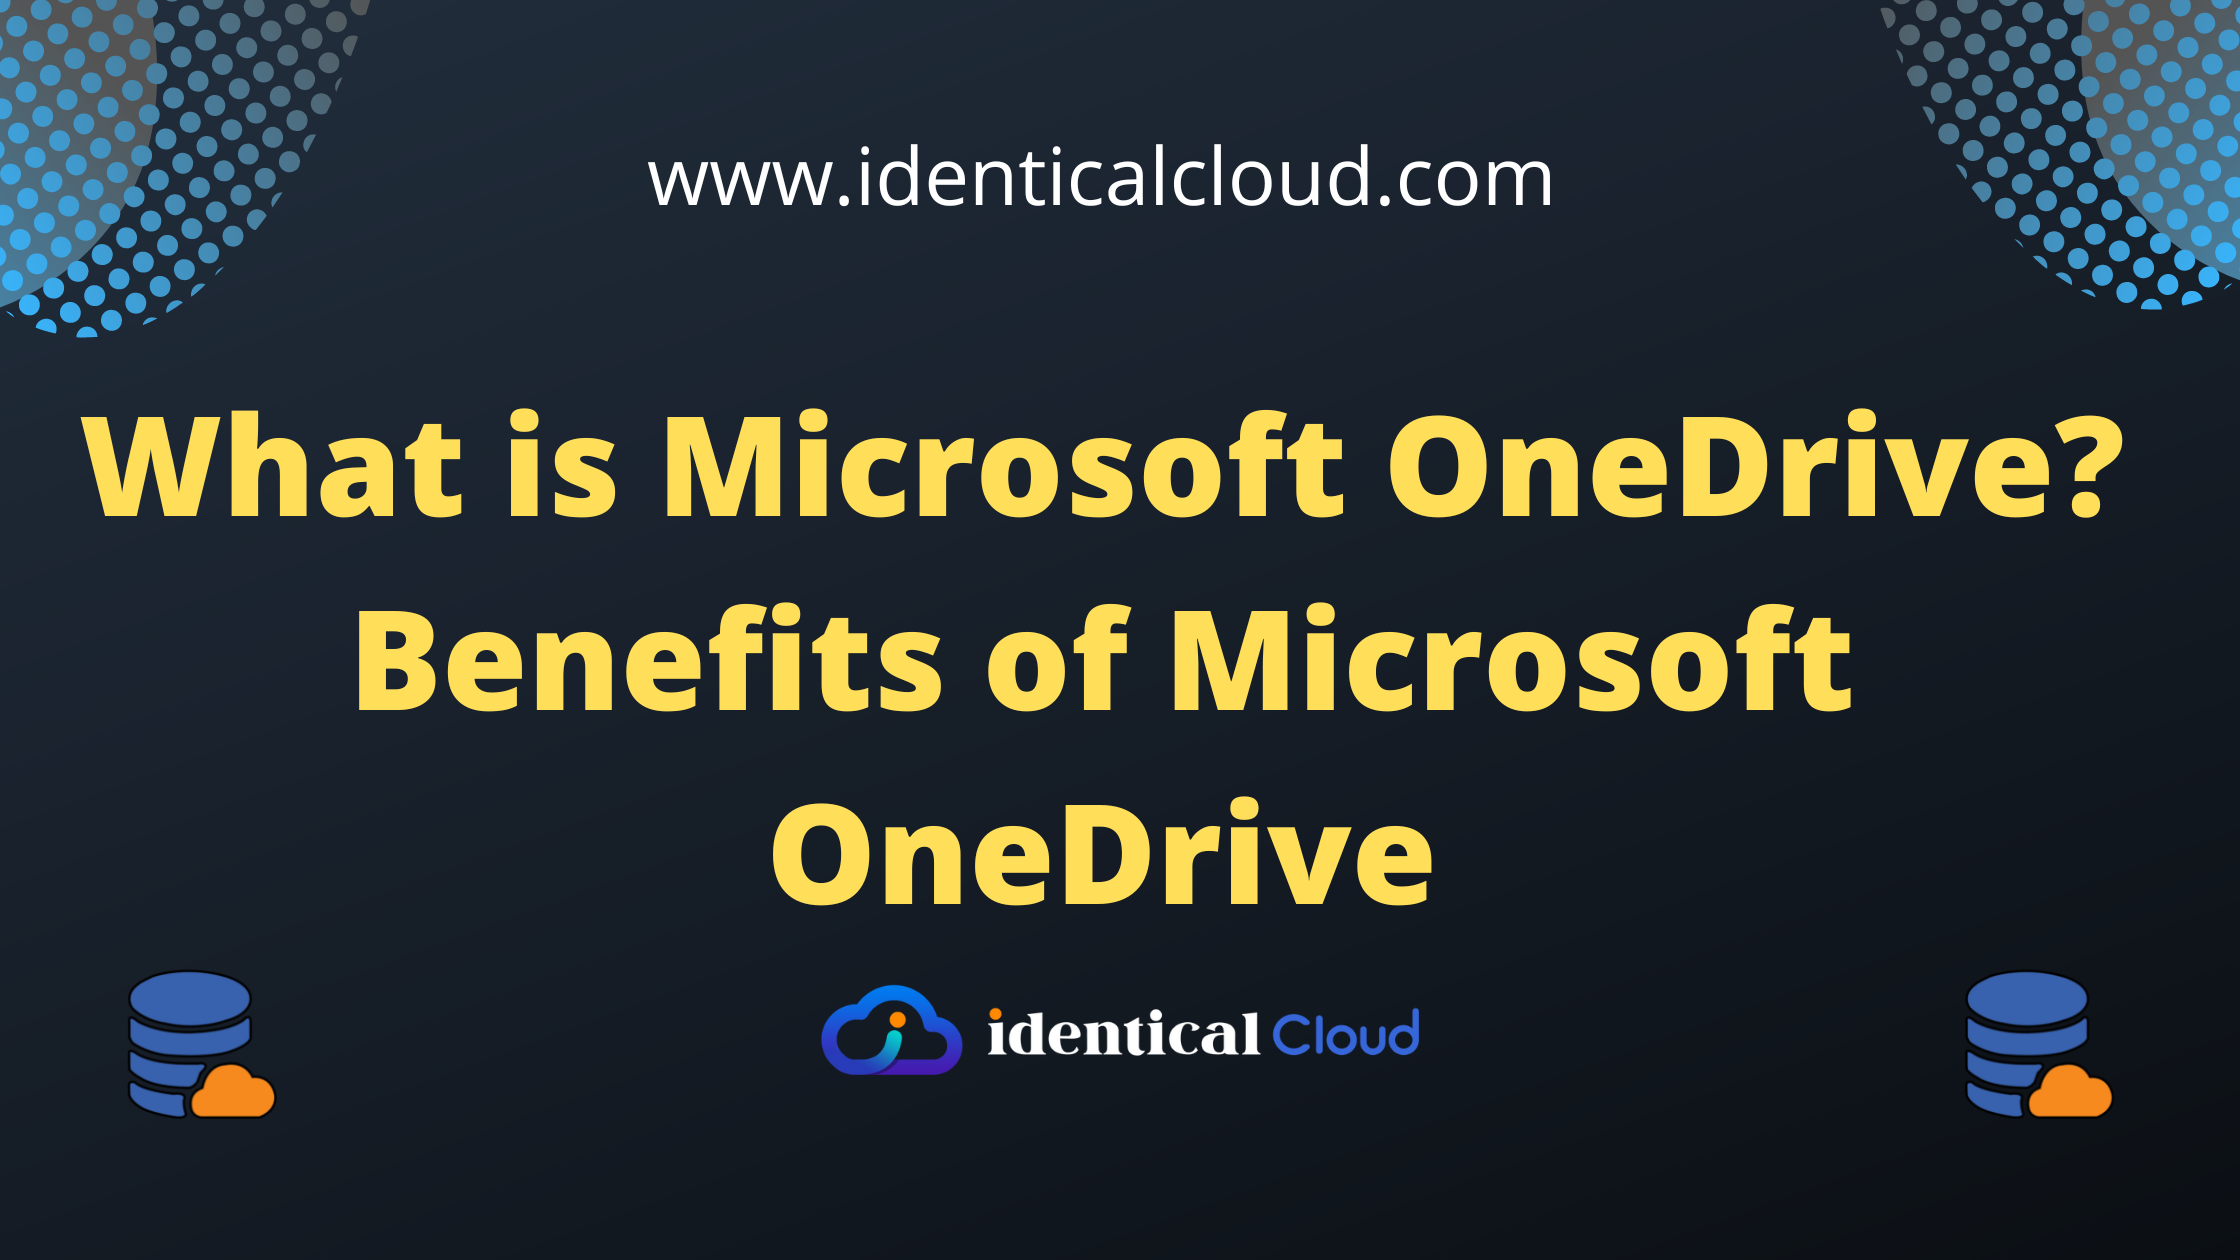 Benefits of Microsoft OneDrive - identicalcloud.com